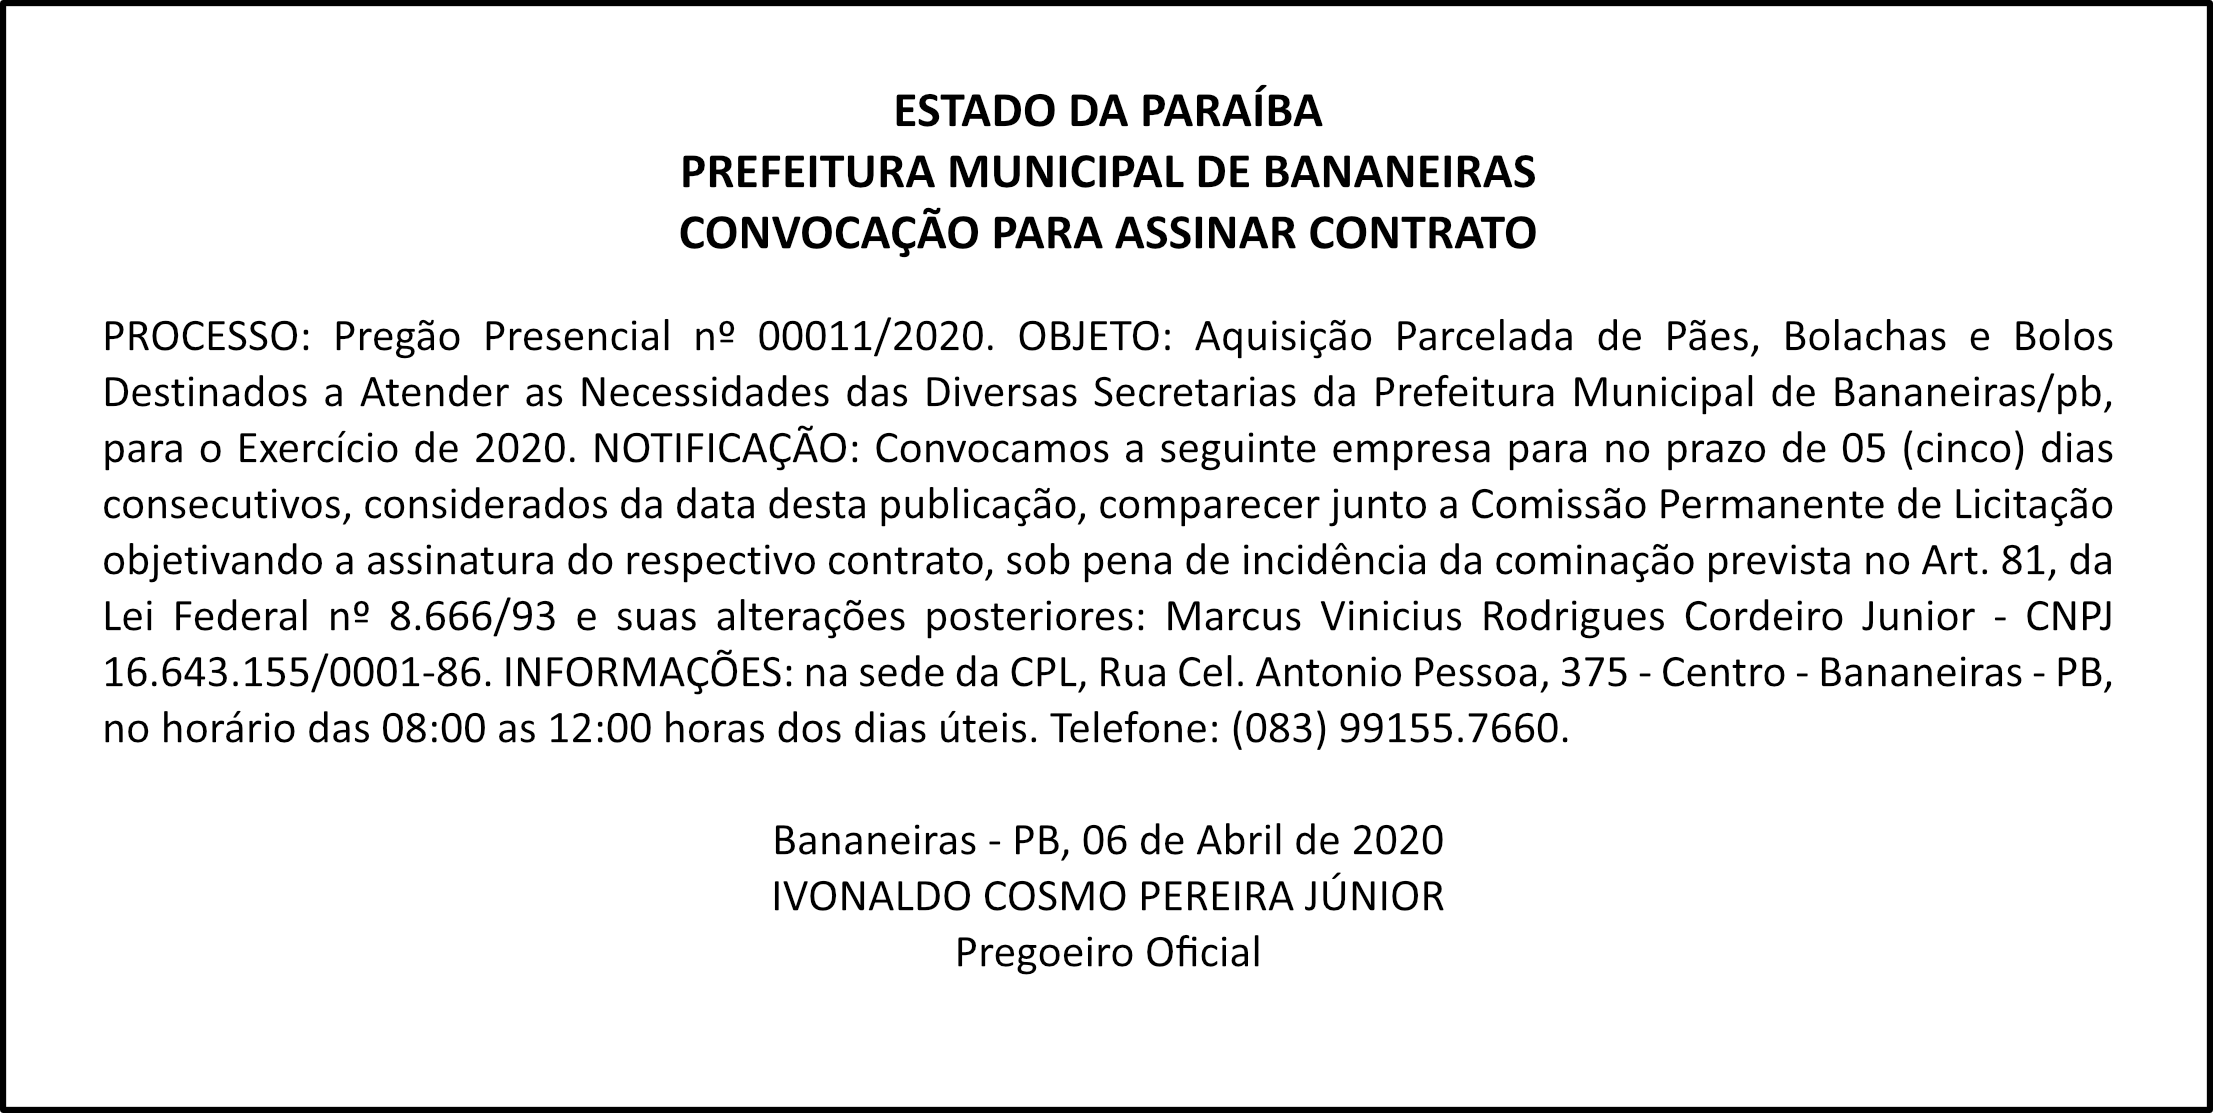 PREFEITURA MUNICIPAL DE BANANEIRAS – CONVOCAÇÃO PARA ASSINAR CONTRATO – PREGÃO nº 00011/2020